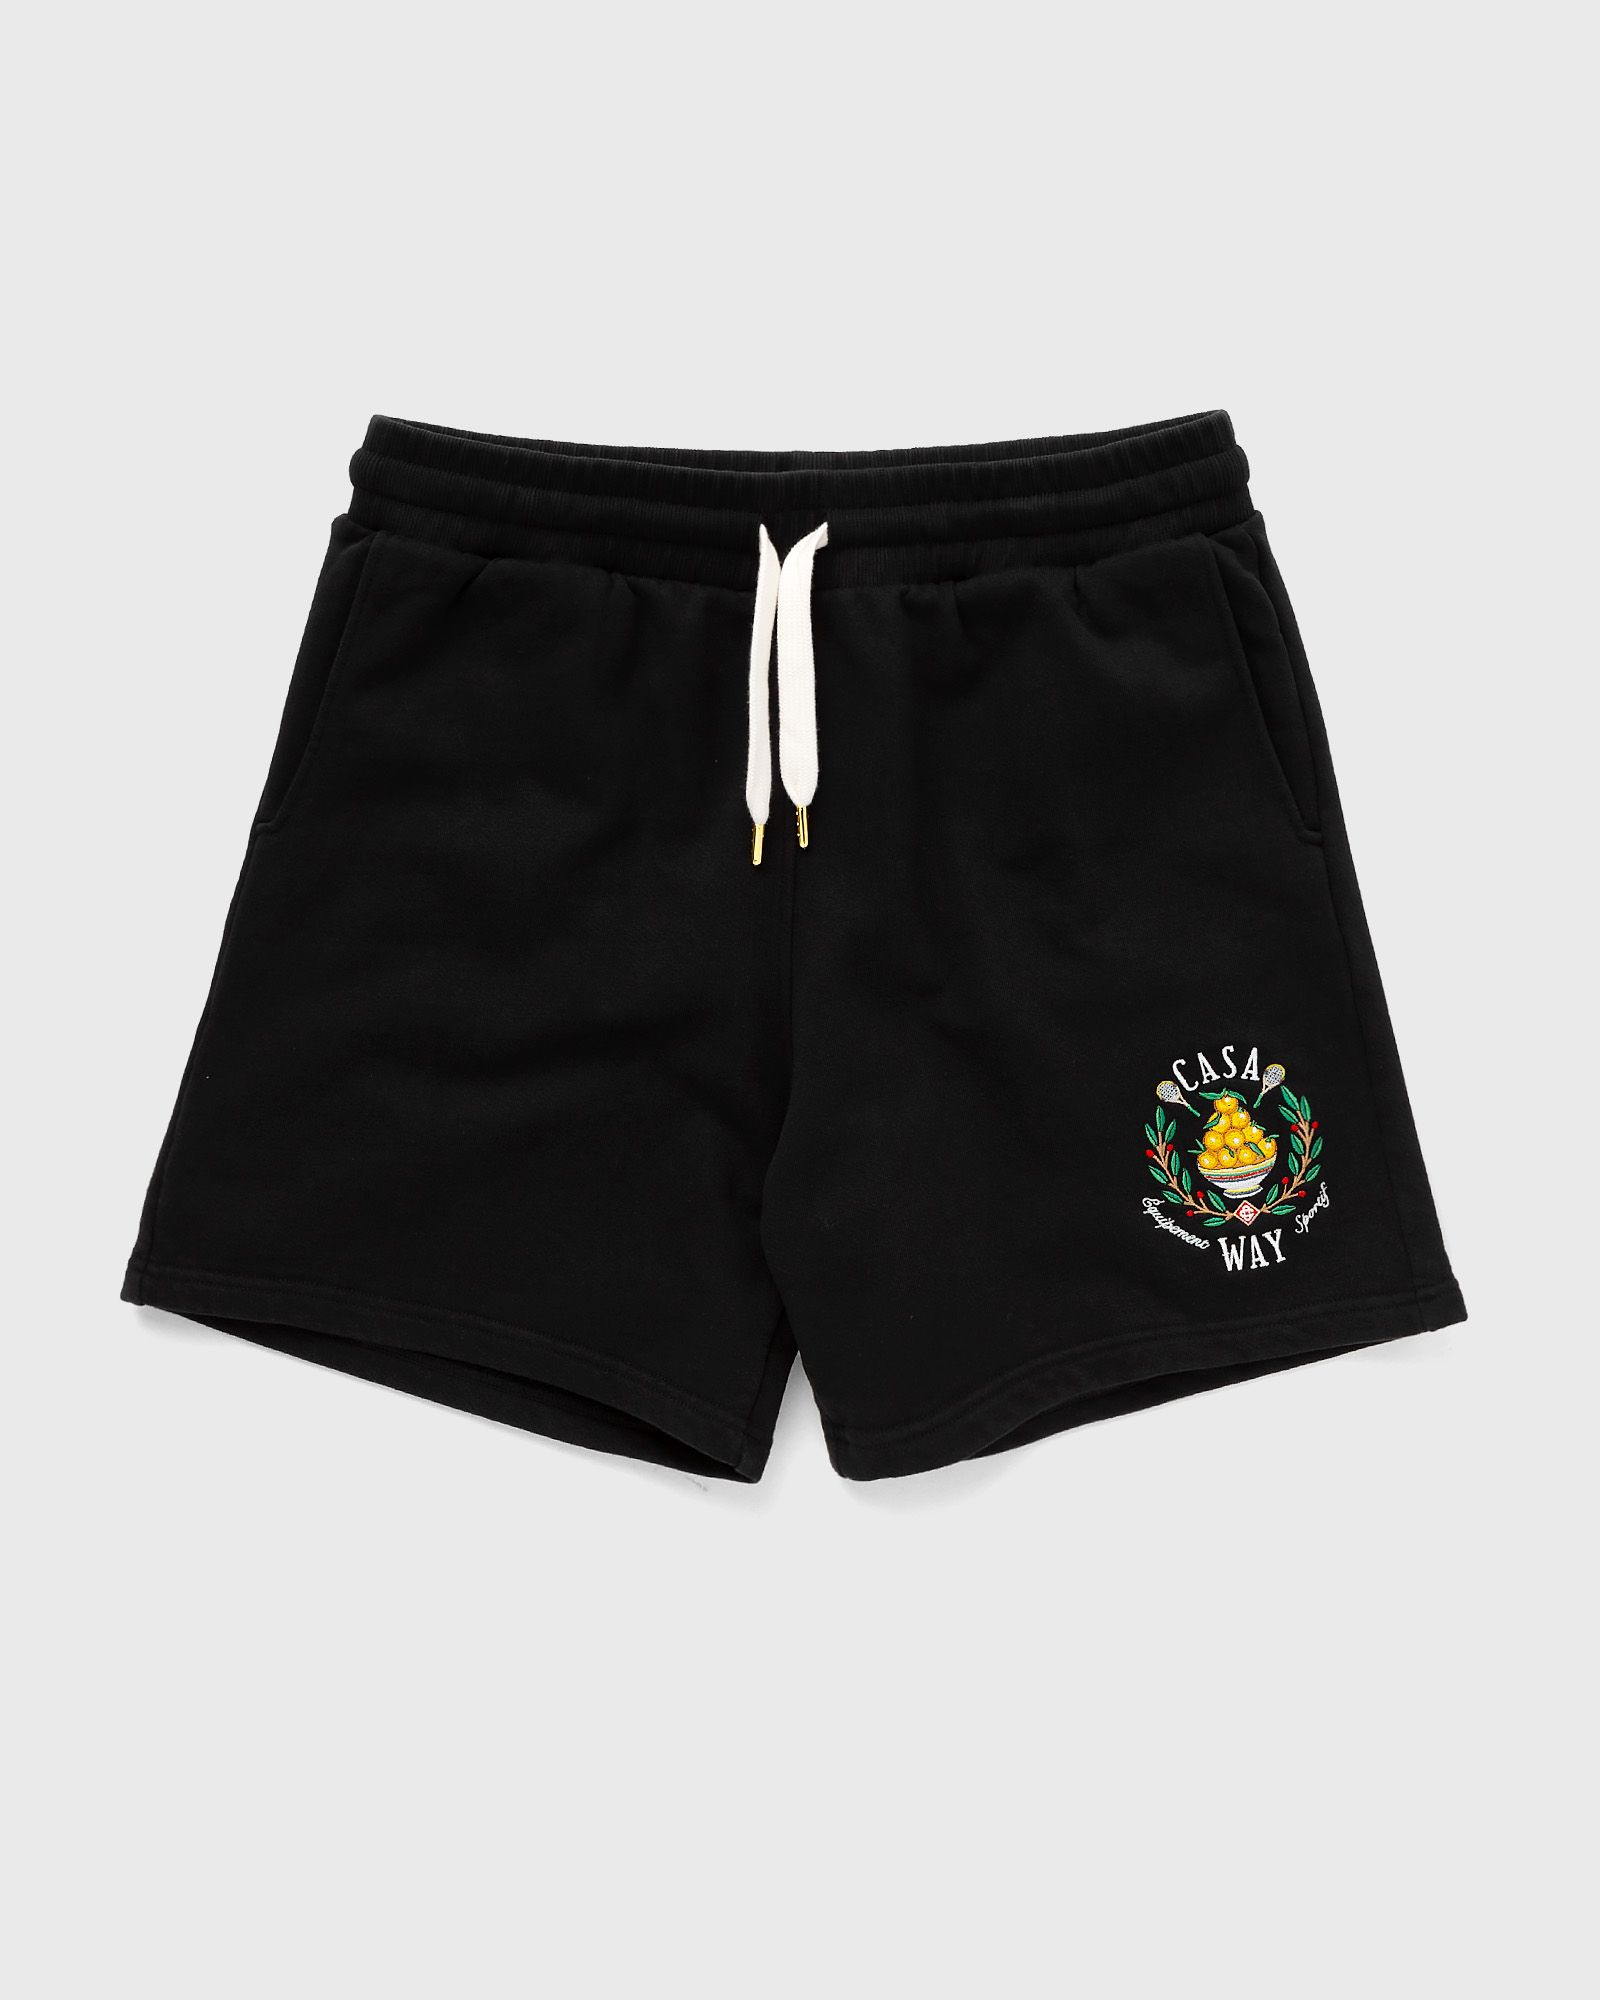 Casablanca - casa way embroidered sweatshort men sport & team shorts black in größe:xl